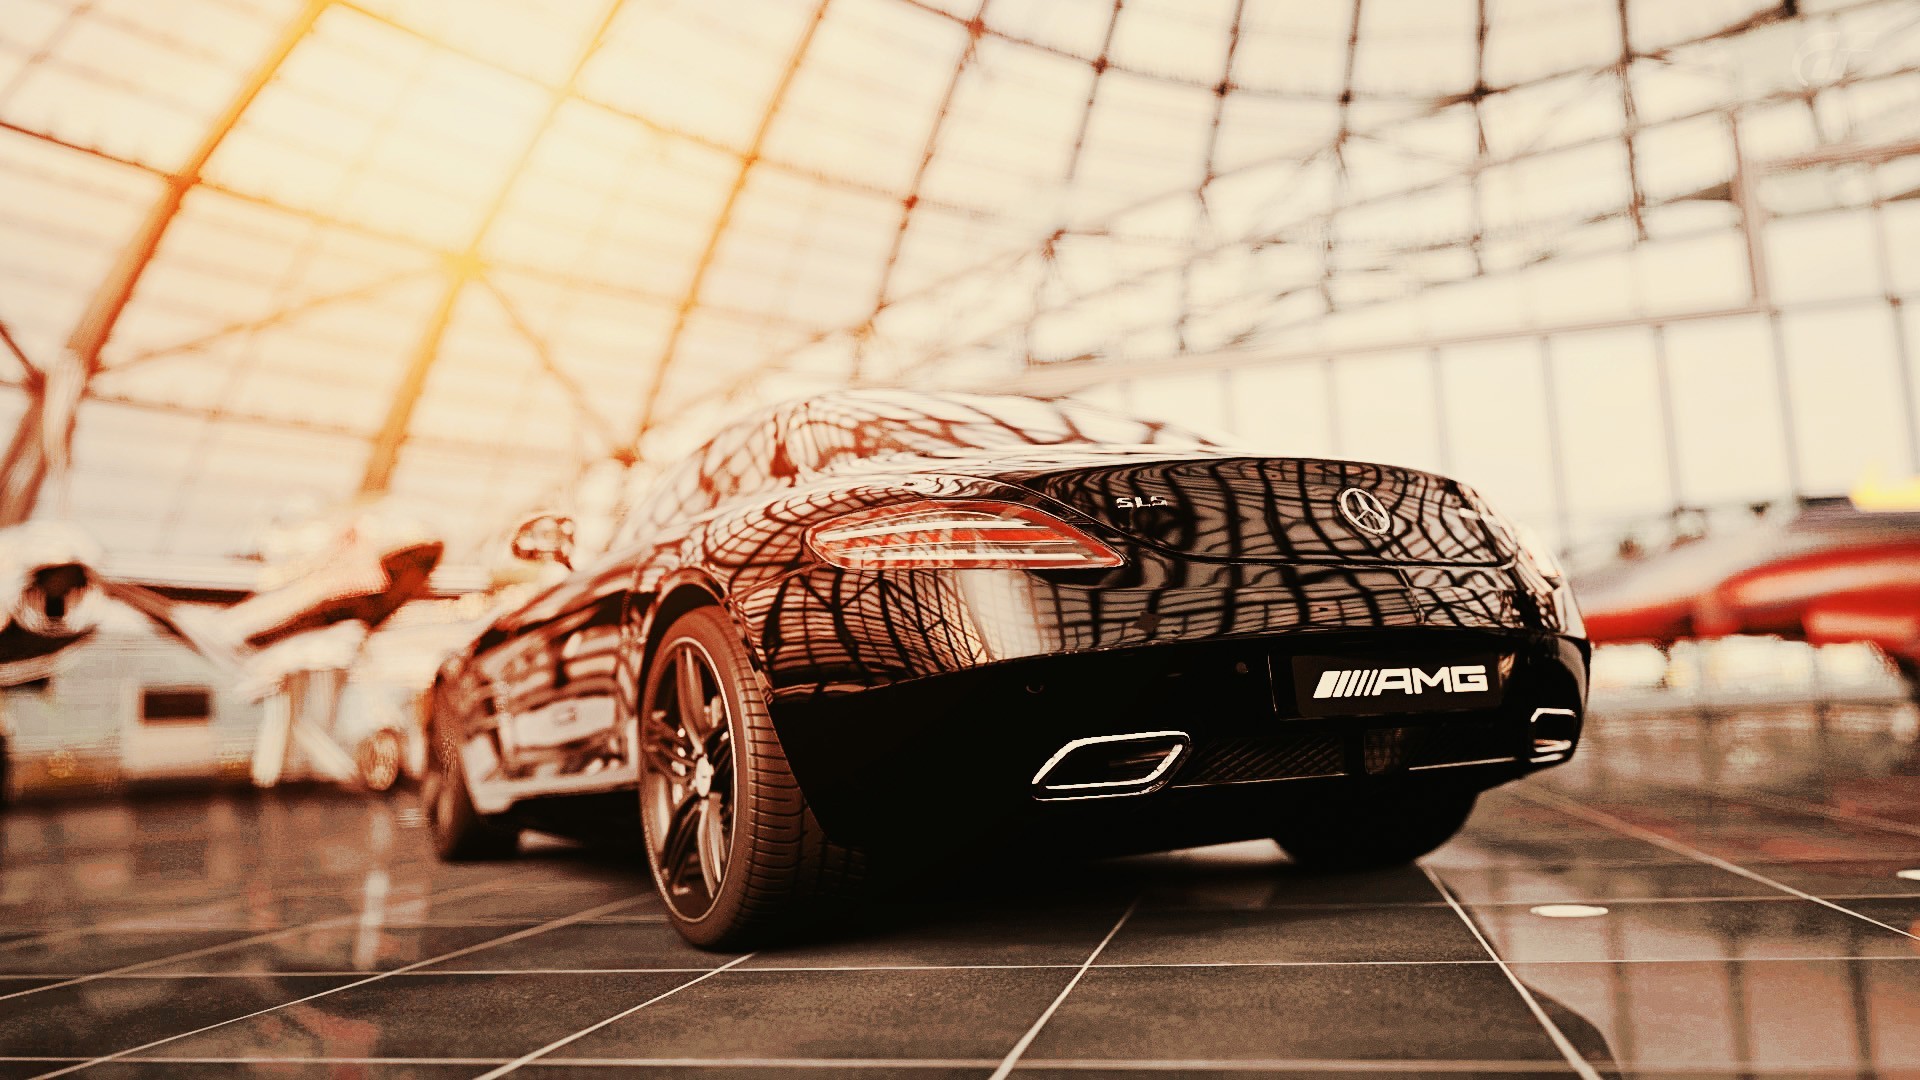 Mercedes Benz, Supercars Wallpaper